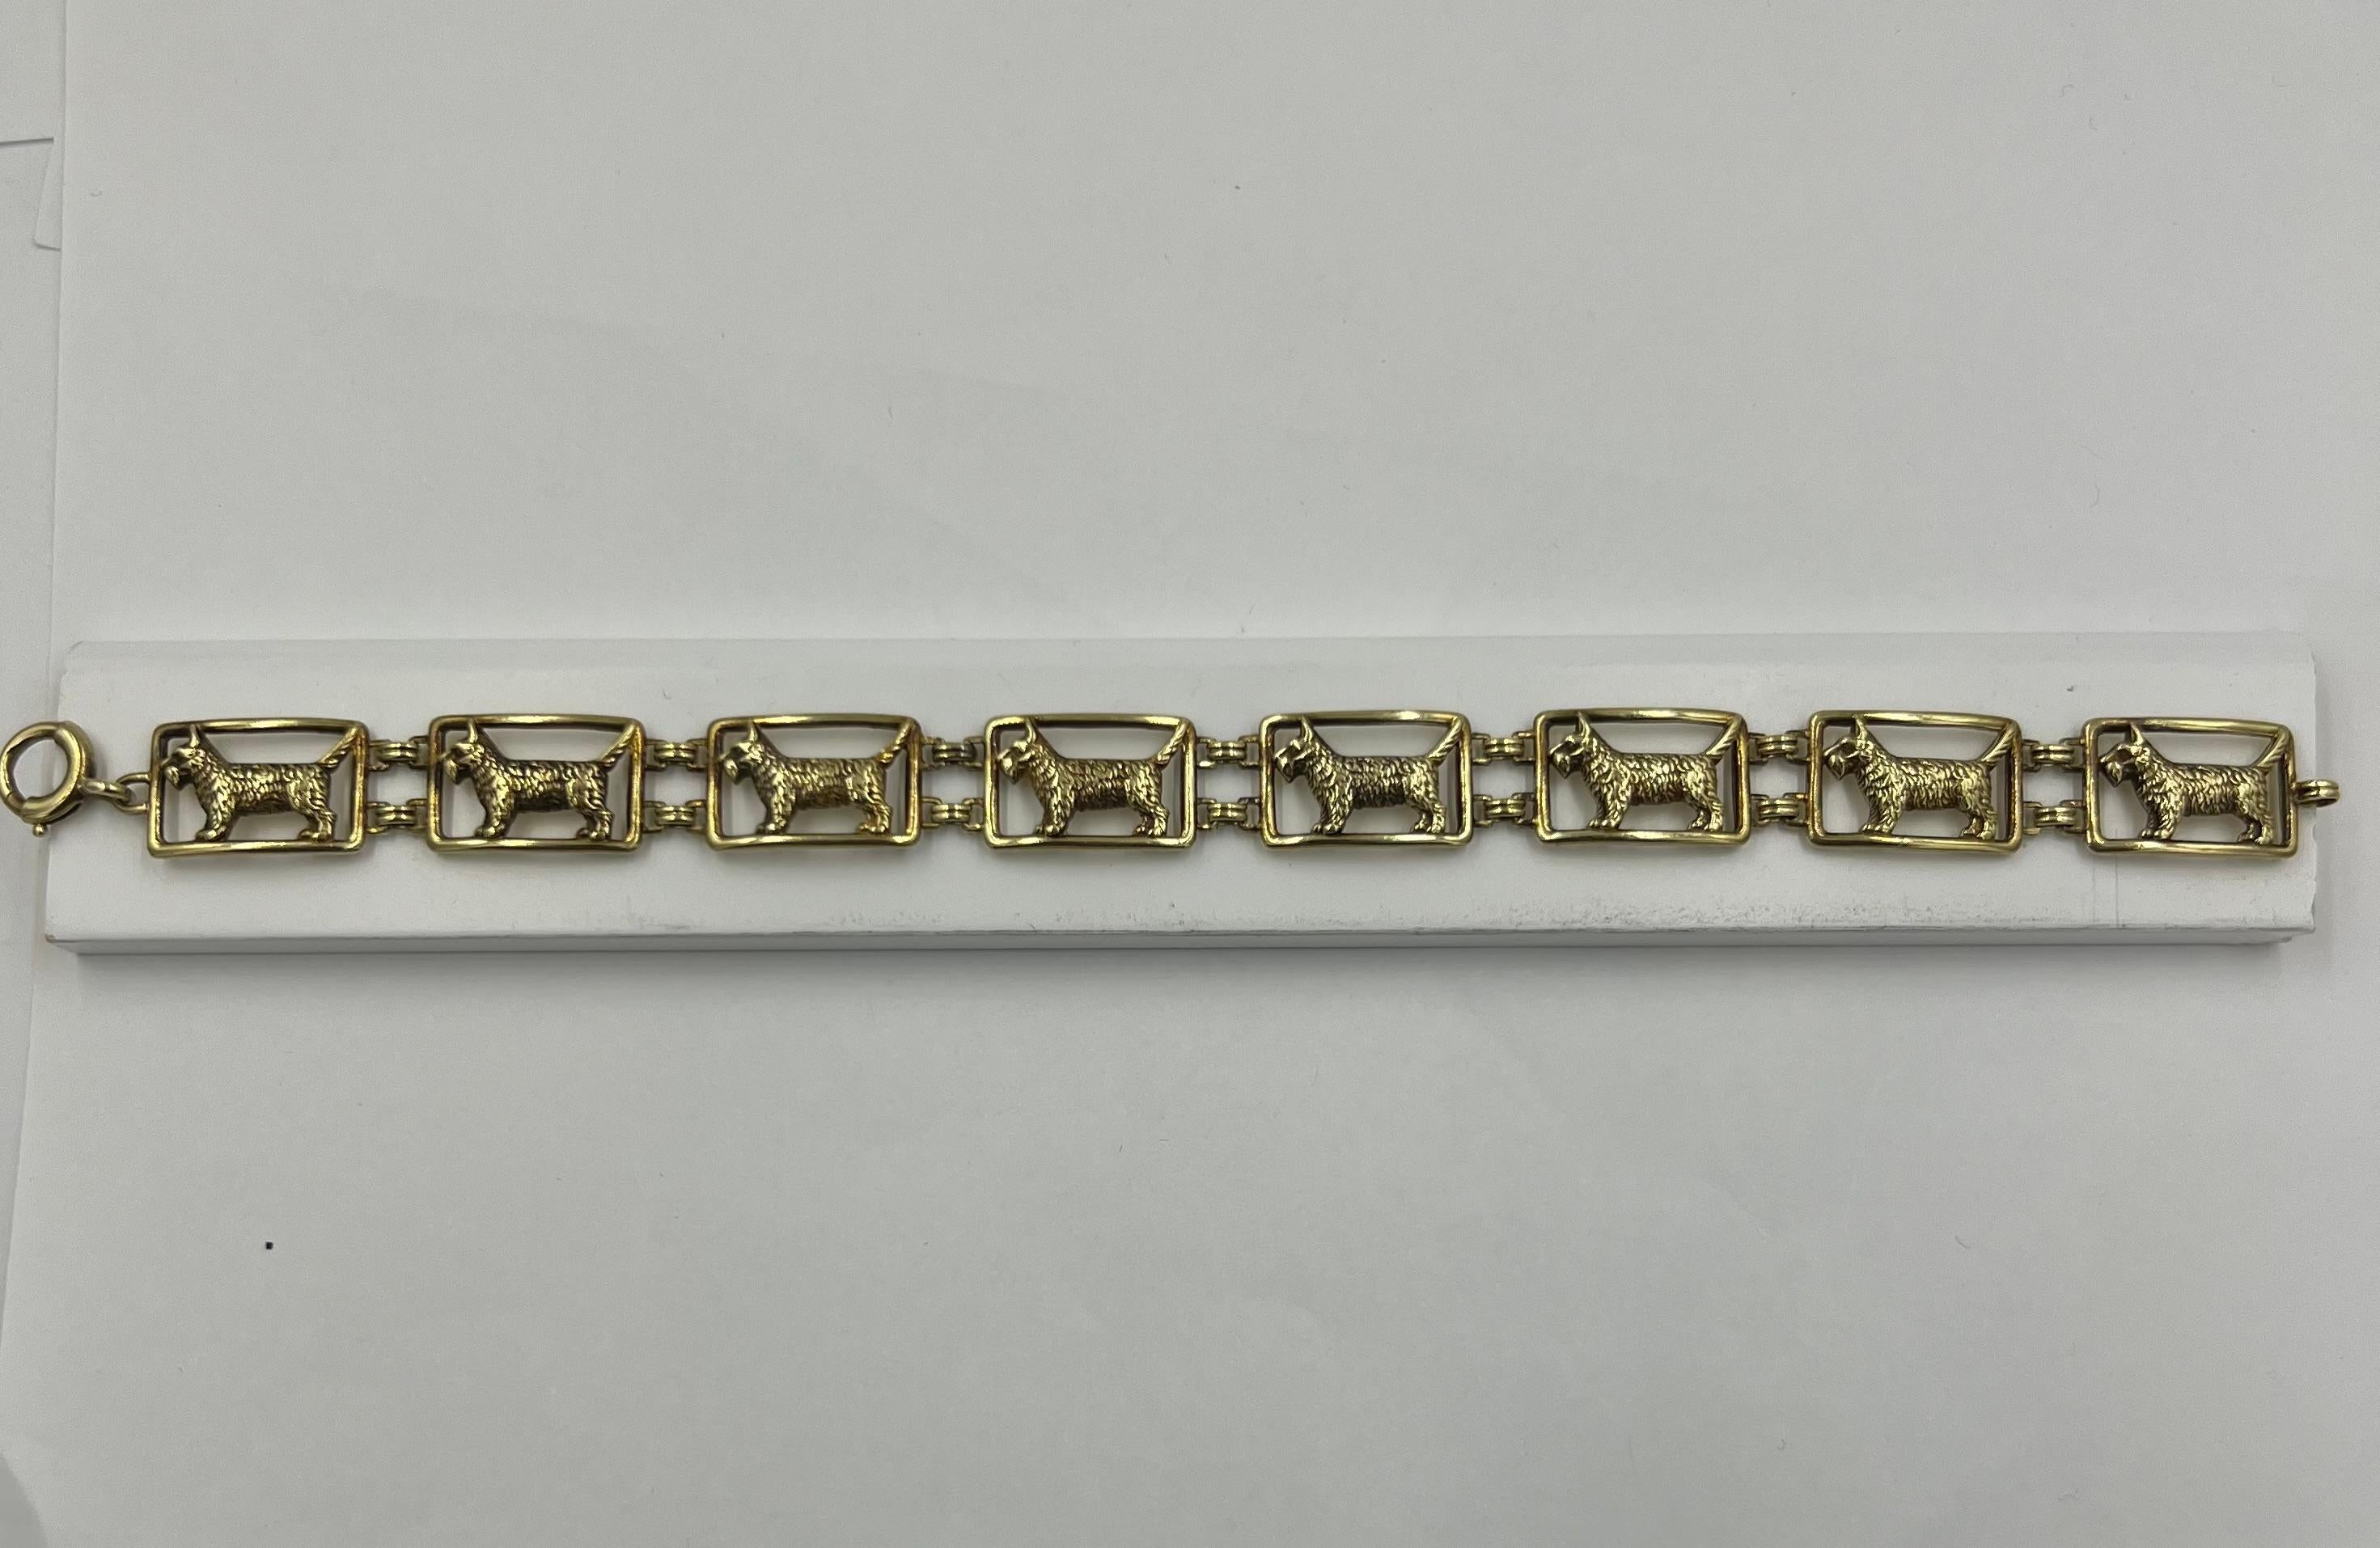 Bracelet Art déco en or jaune avec chien écossais, circa 1925
Ce bracelet Art déco en or jaune avec chien écossais est un superbe bijou qui incarne l'élégance et la sophistication de l'époque Art déco. Confectionné en or jaune luxueux, ce bracelet